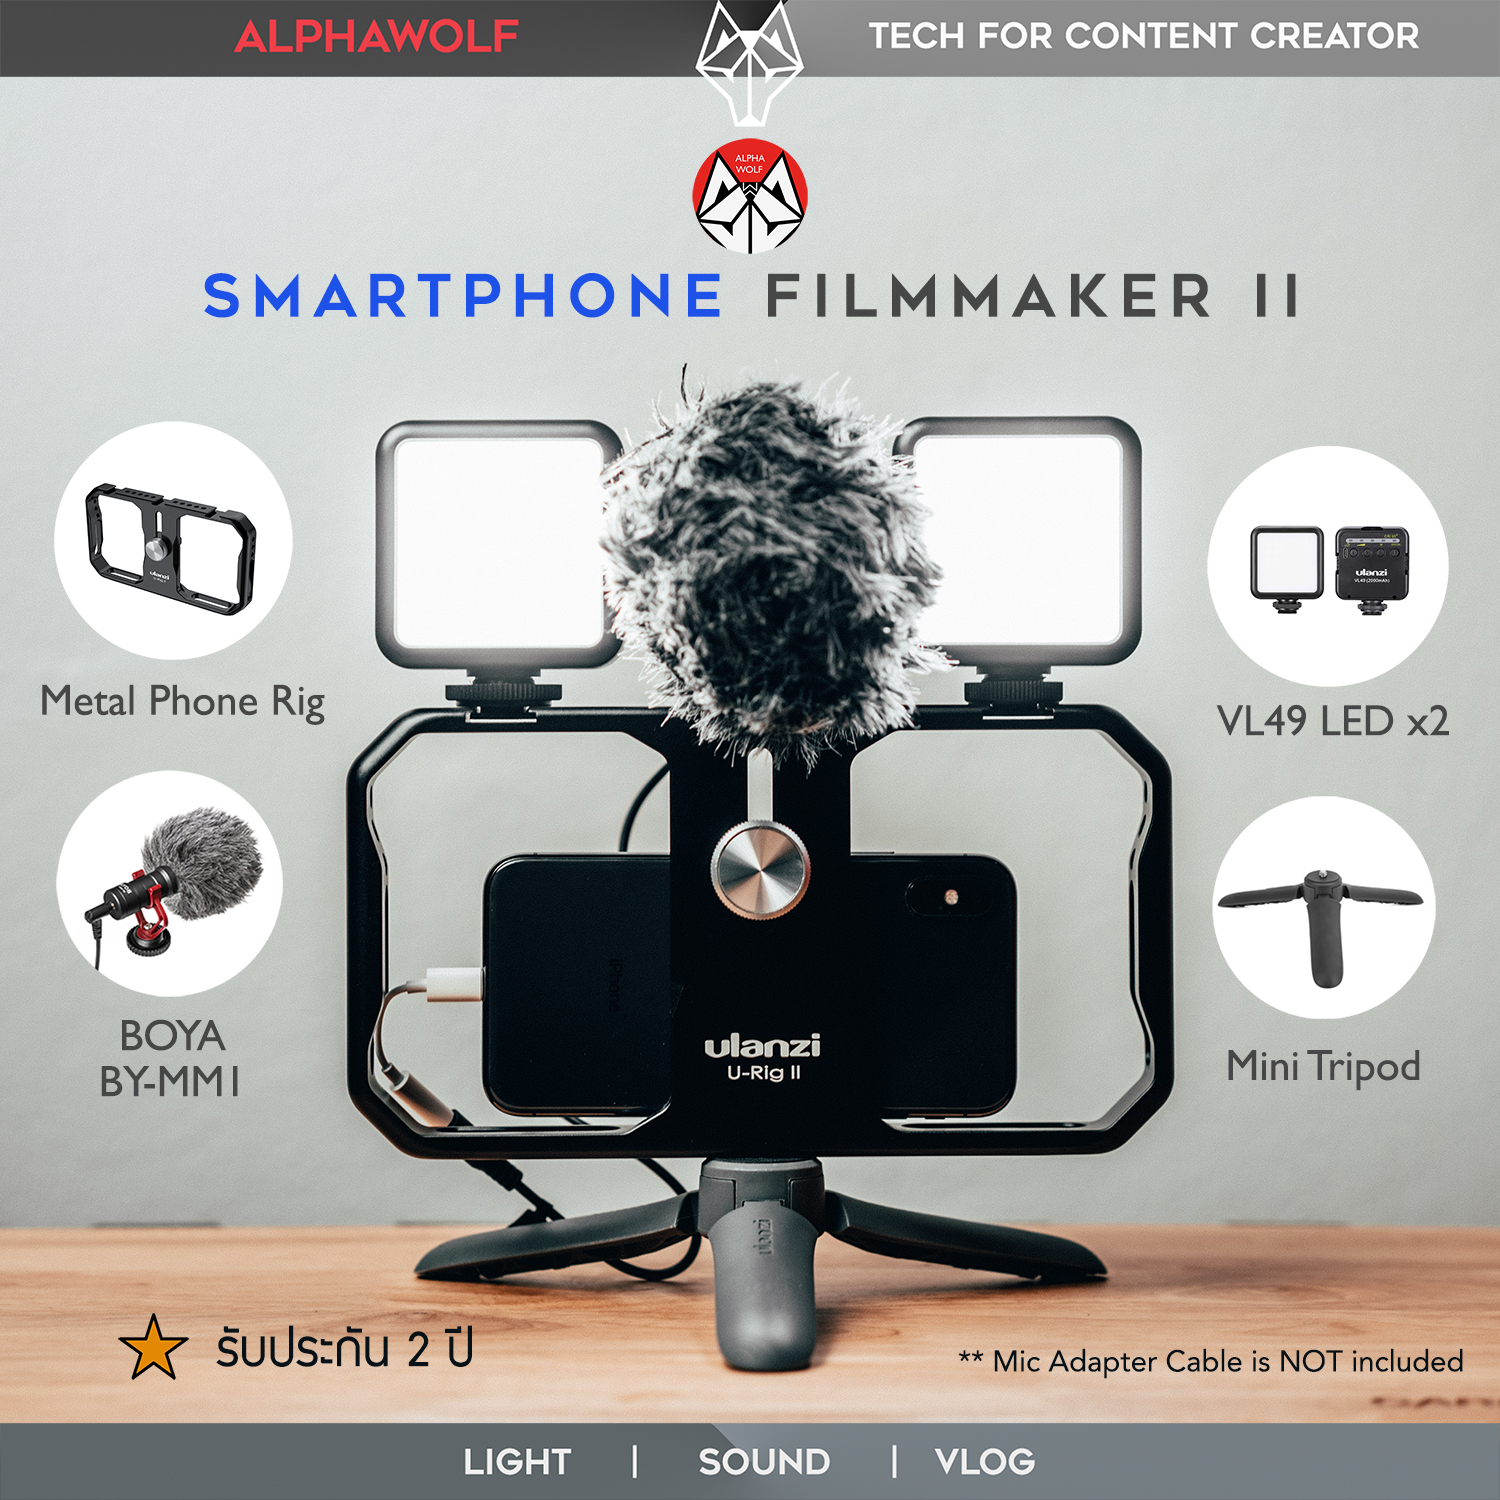 ชุดไลฟ์สด NEW Ulanzi Smartphone Filmmaker II ชุด Vlog ถ่ายวีดีโอ รายการ ท่องเที่ยว ครบจบในเซ็ตเดียว ที่จับ+ไมค์+ไฟx2+ขาตั้ง ประกัน 2ปี | ALPHAWOLF